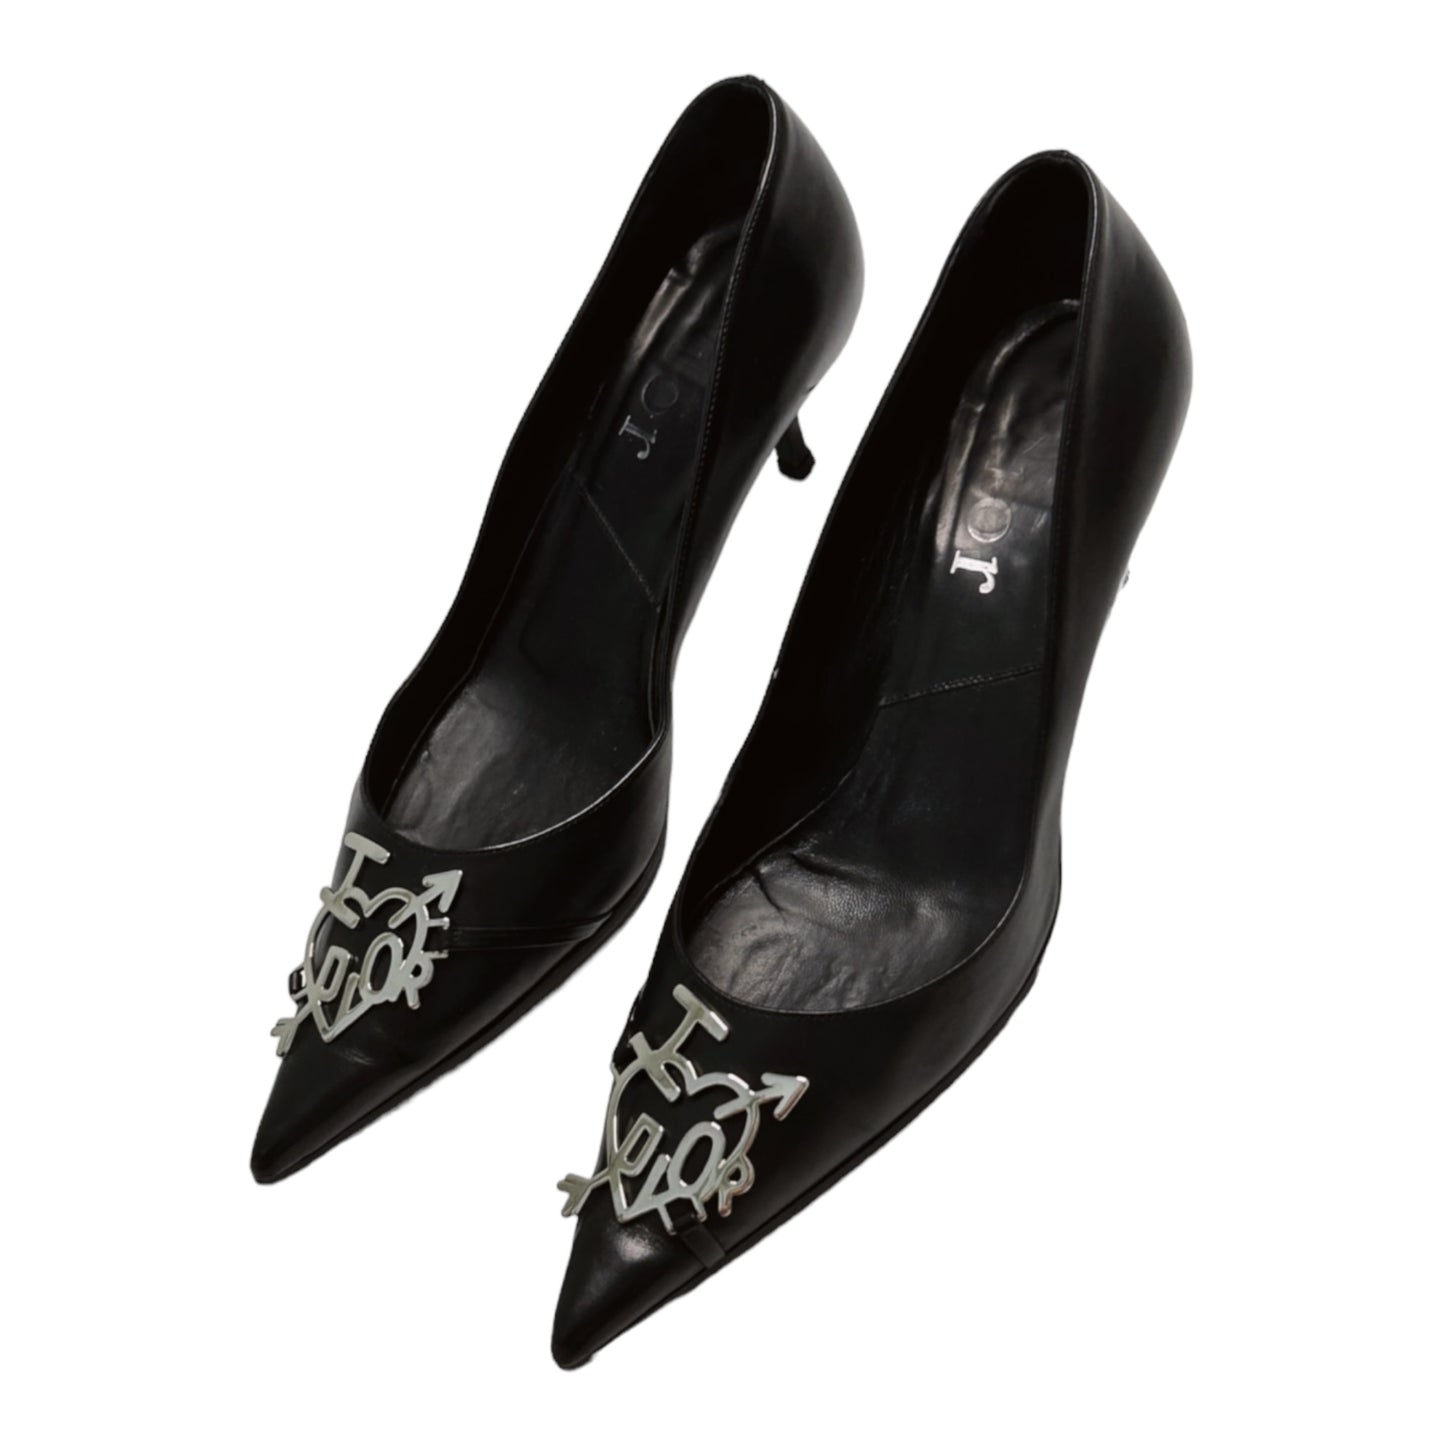 Vintage “I love Dior” black leather heels